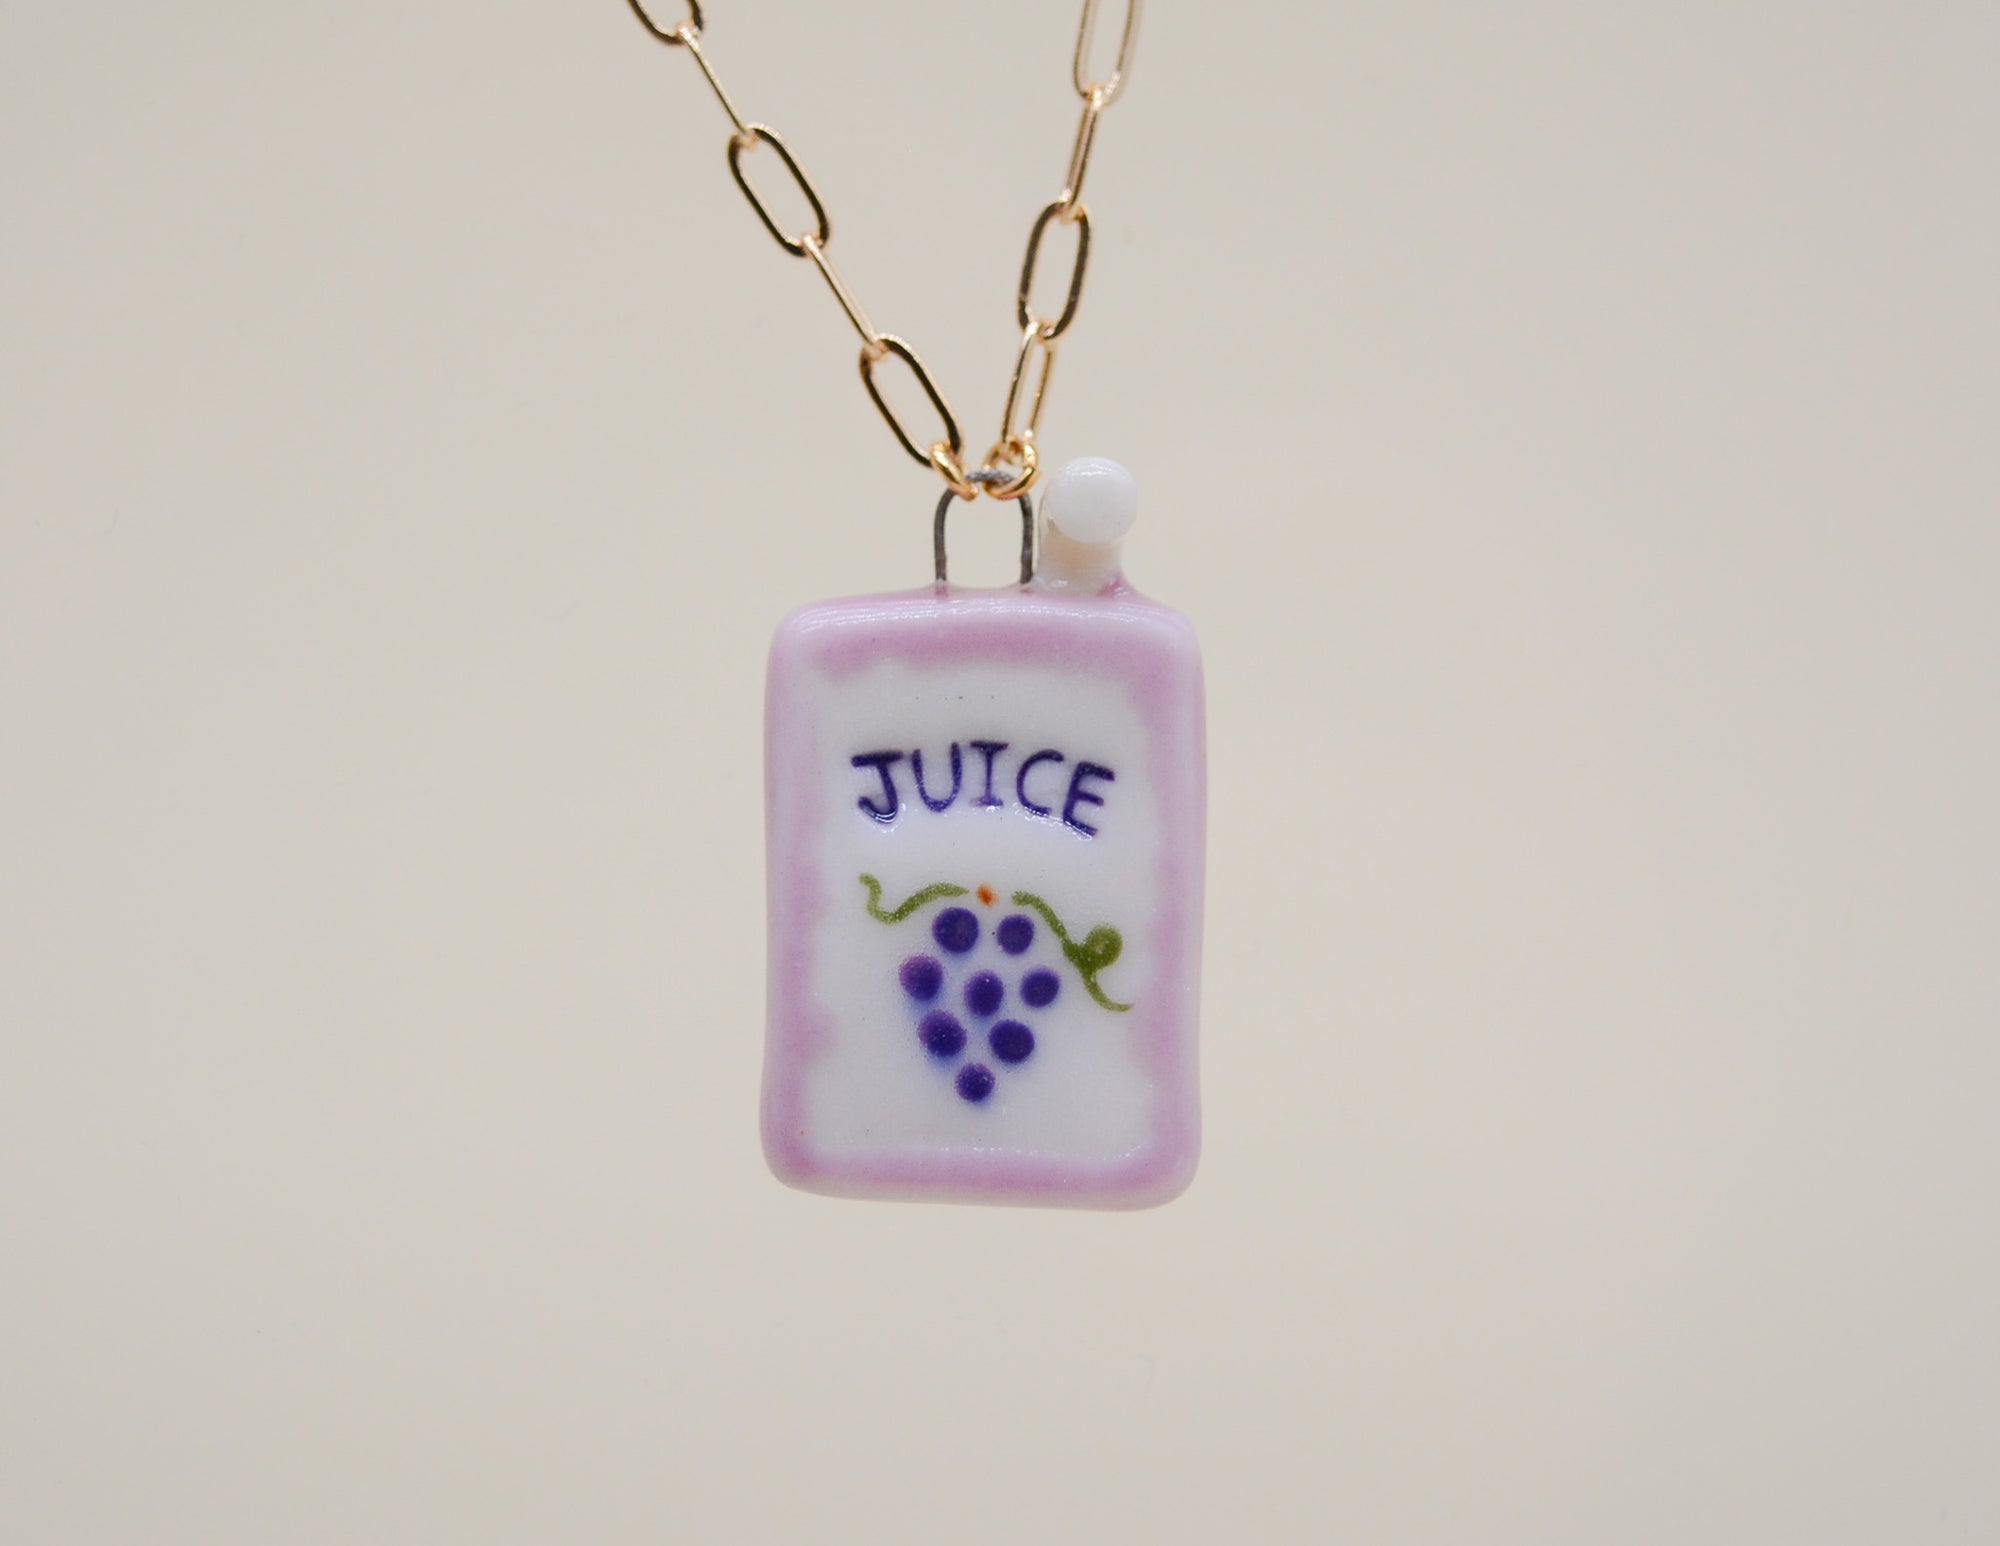 Grape Juice Box Necklace